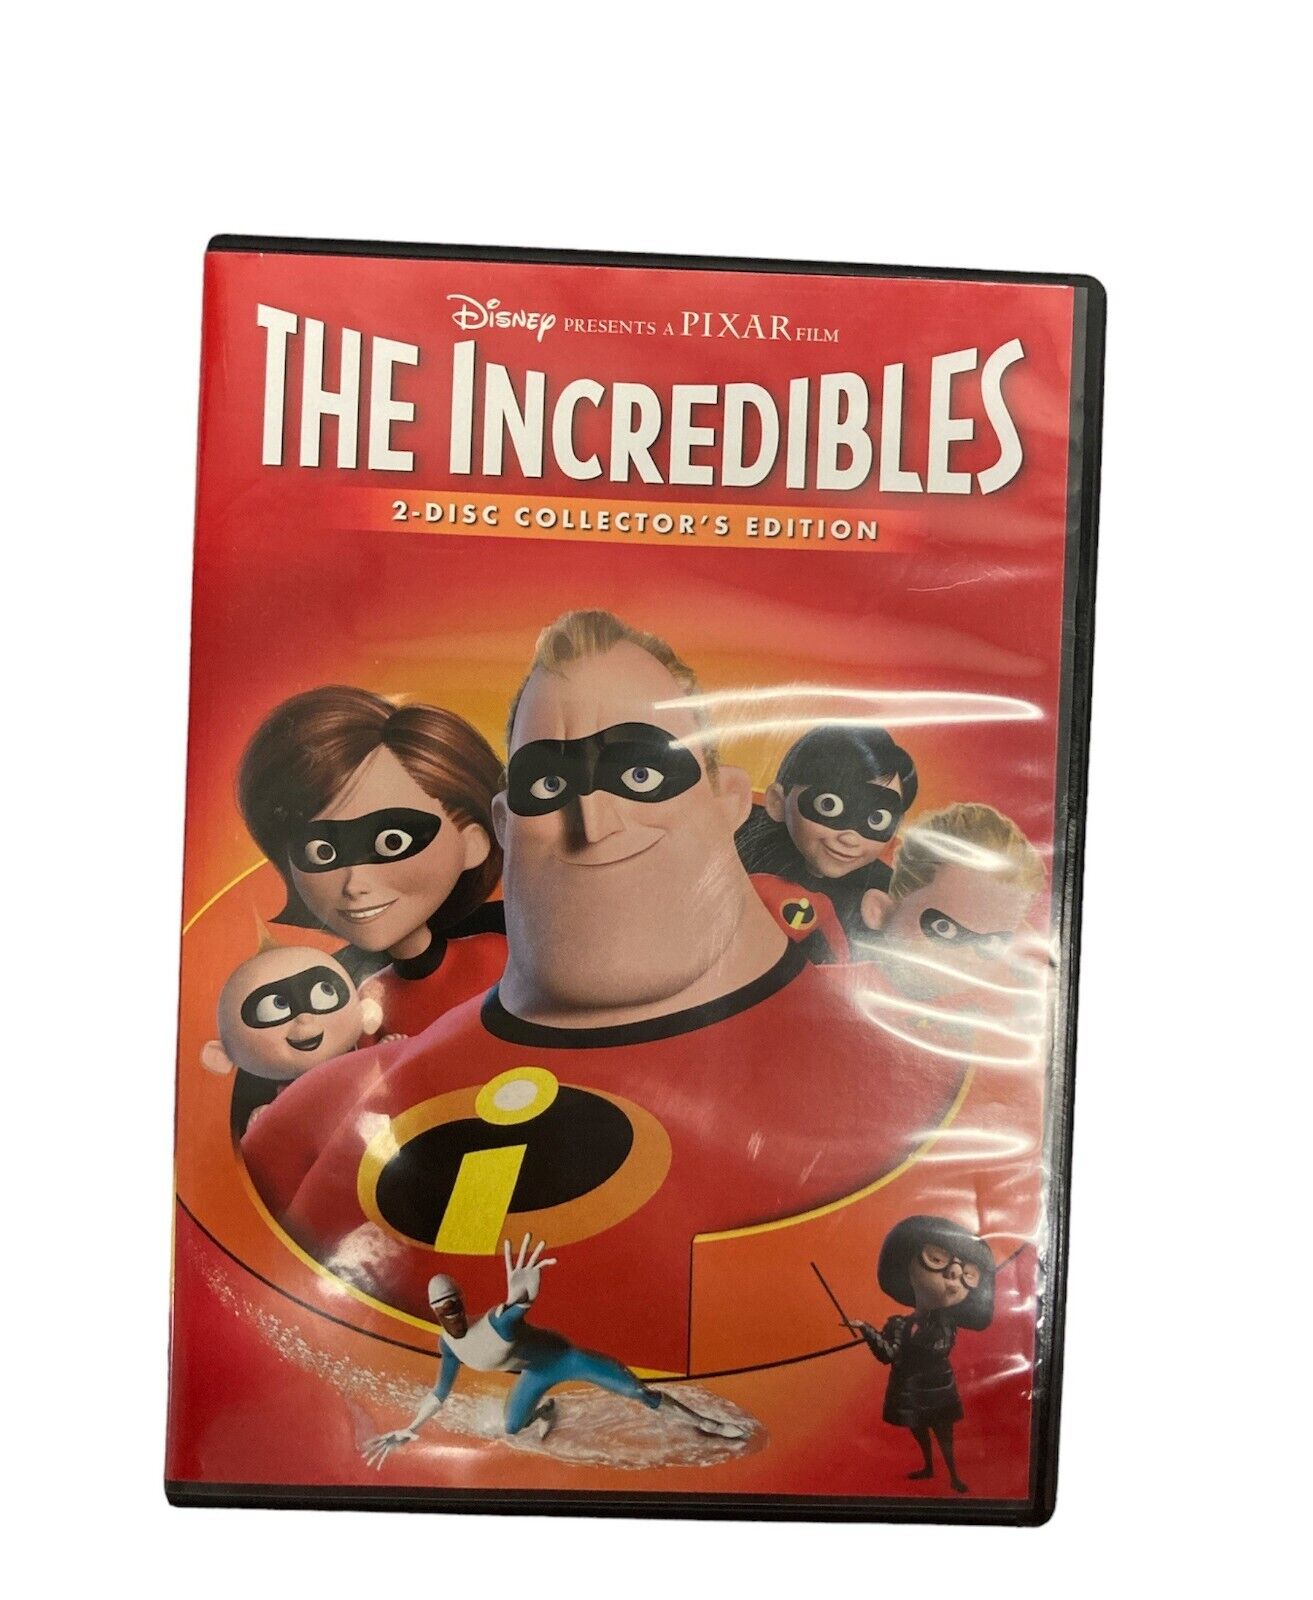 The Incredibles (2-Disc DVD Collector's Edition) PIXAR Disney